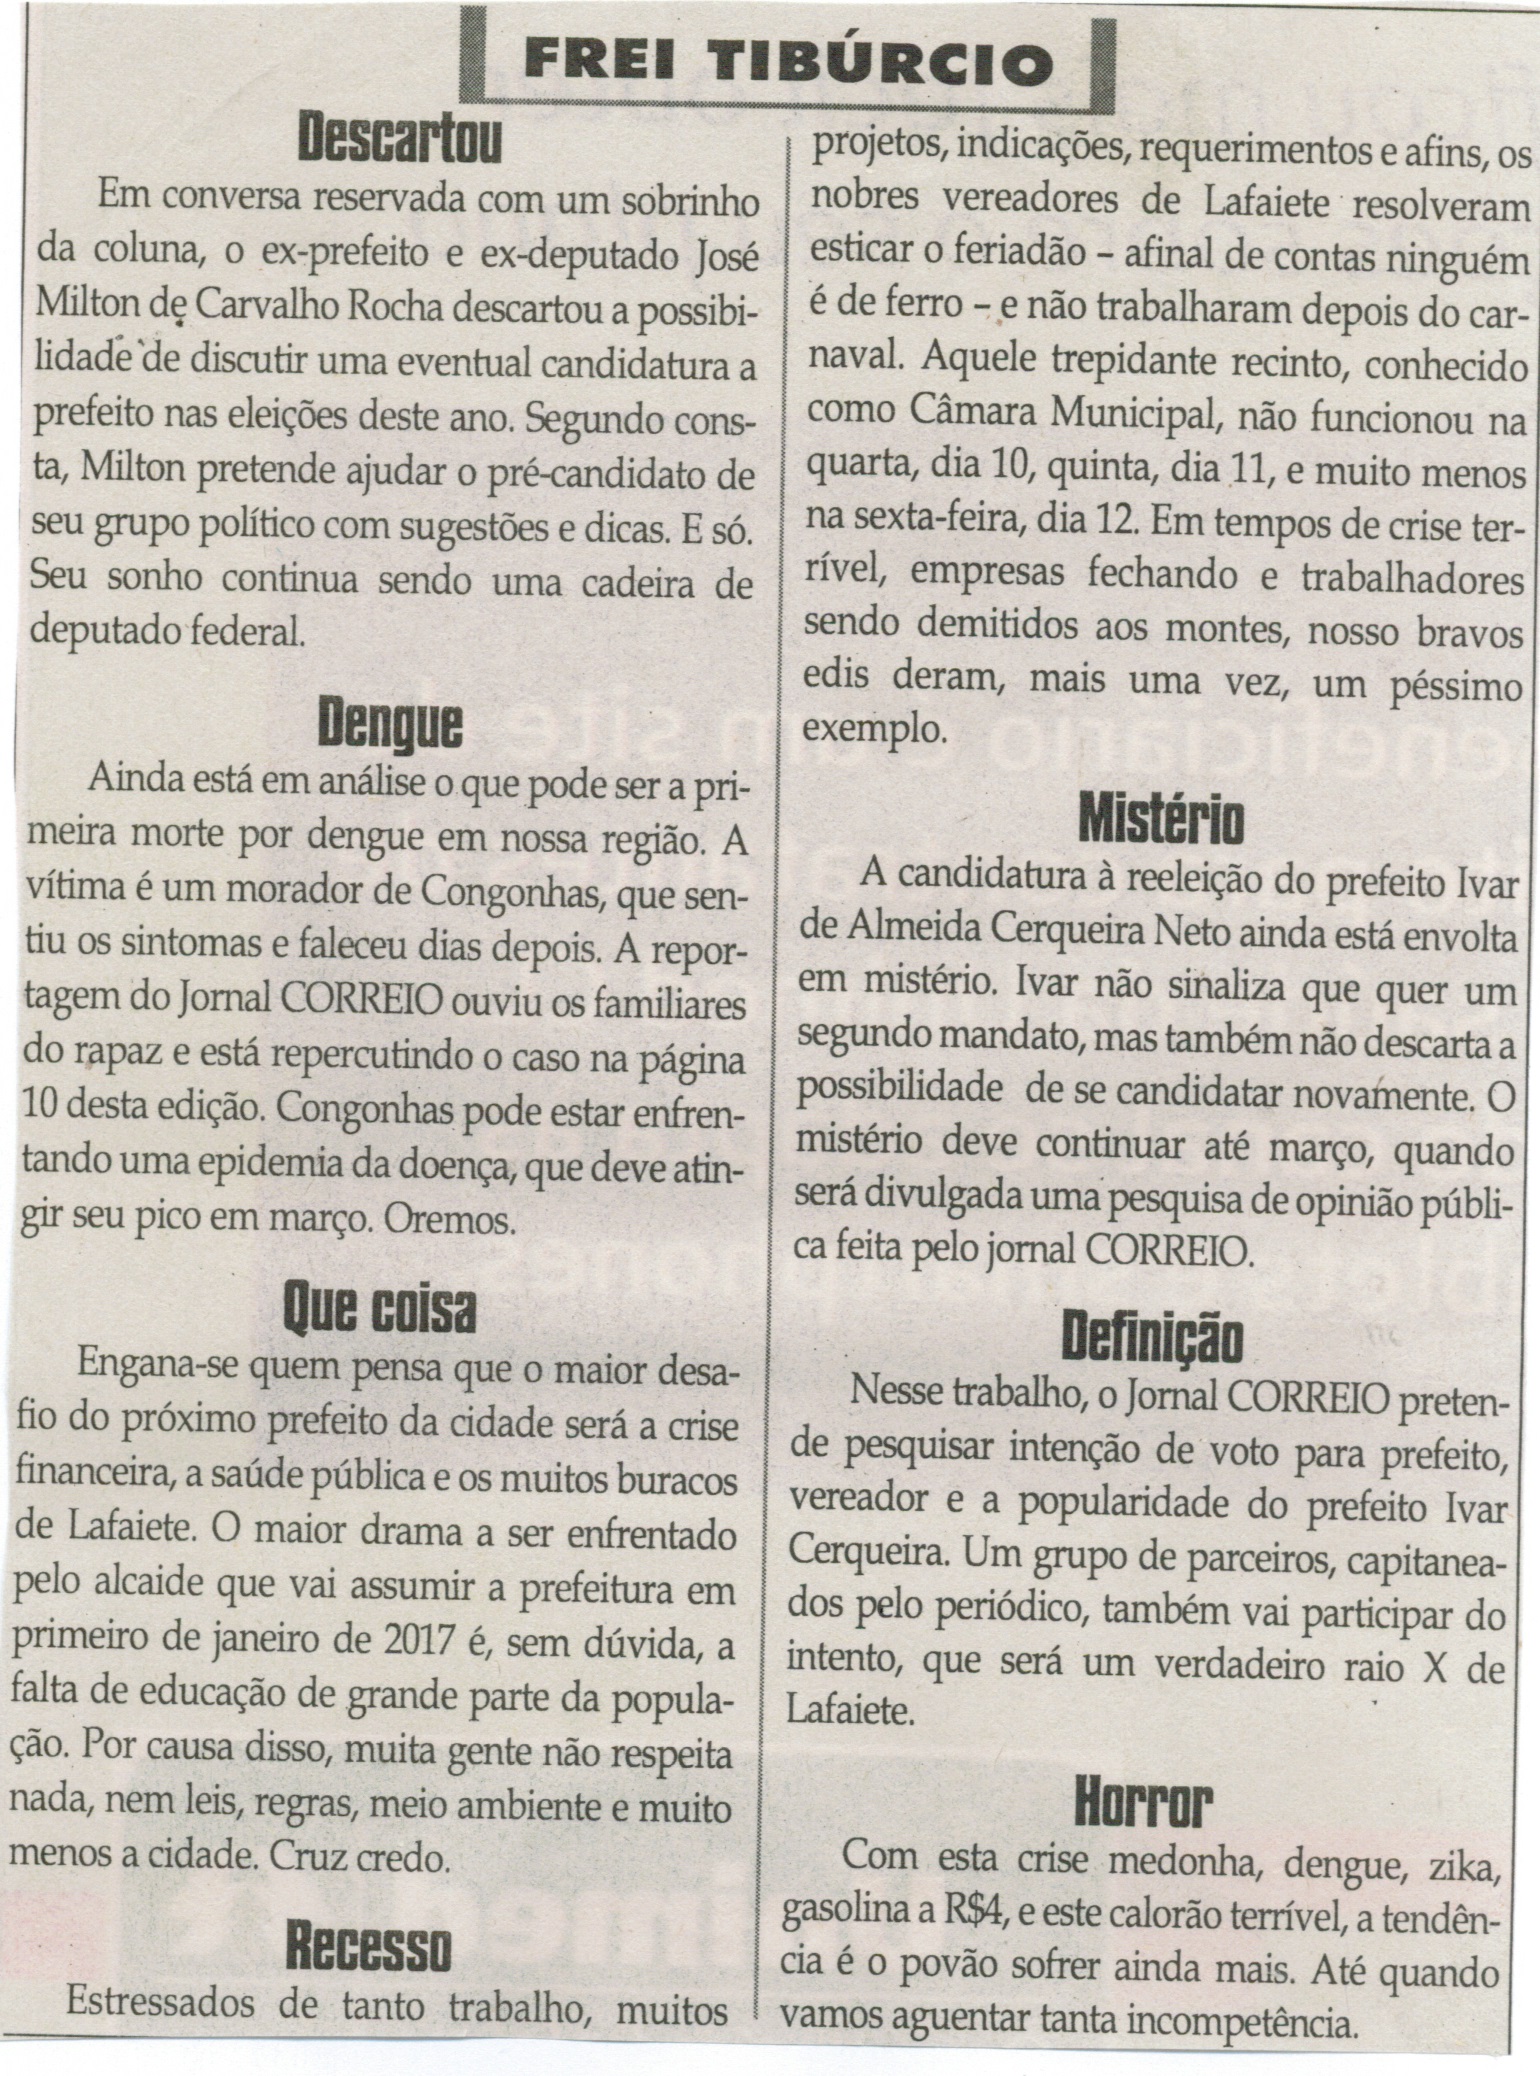 Recesso. Jornal Correio da Cidade, Conselheiro Lafaiete, 13 a 19 fev. 2016, 1304ª ed., Caderno Opinião, Frei Tibúrcio, p. 8.